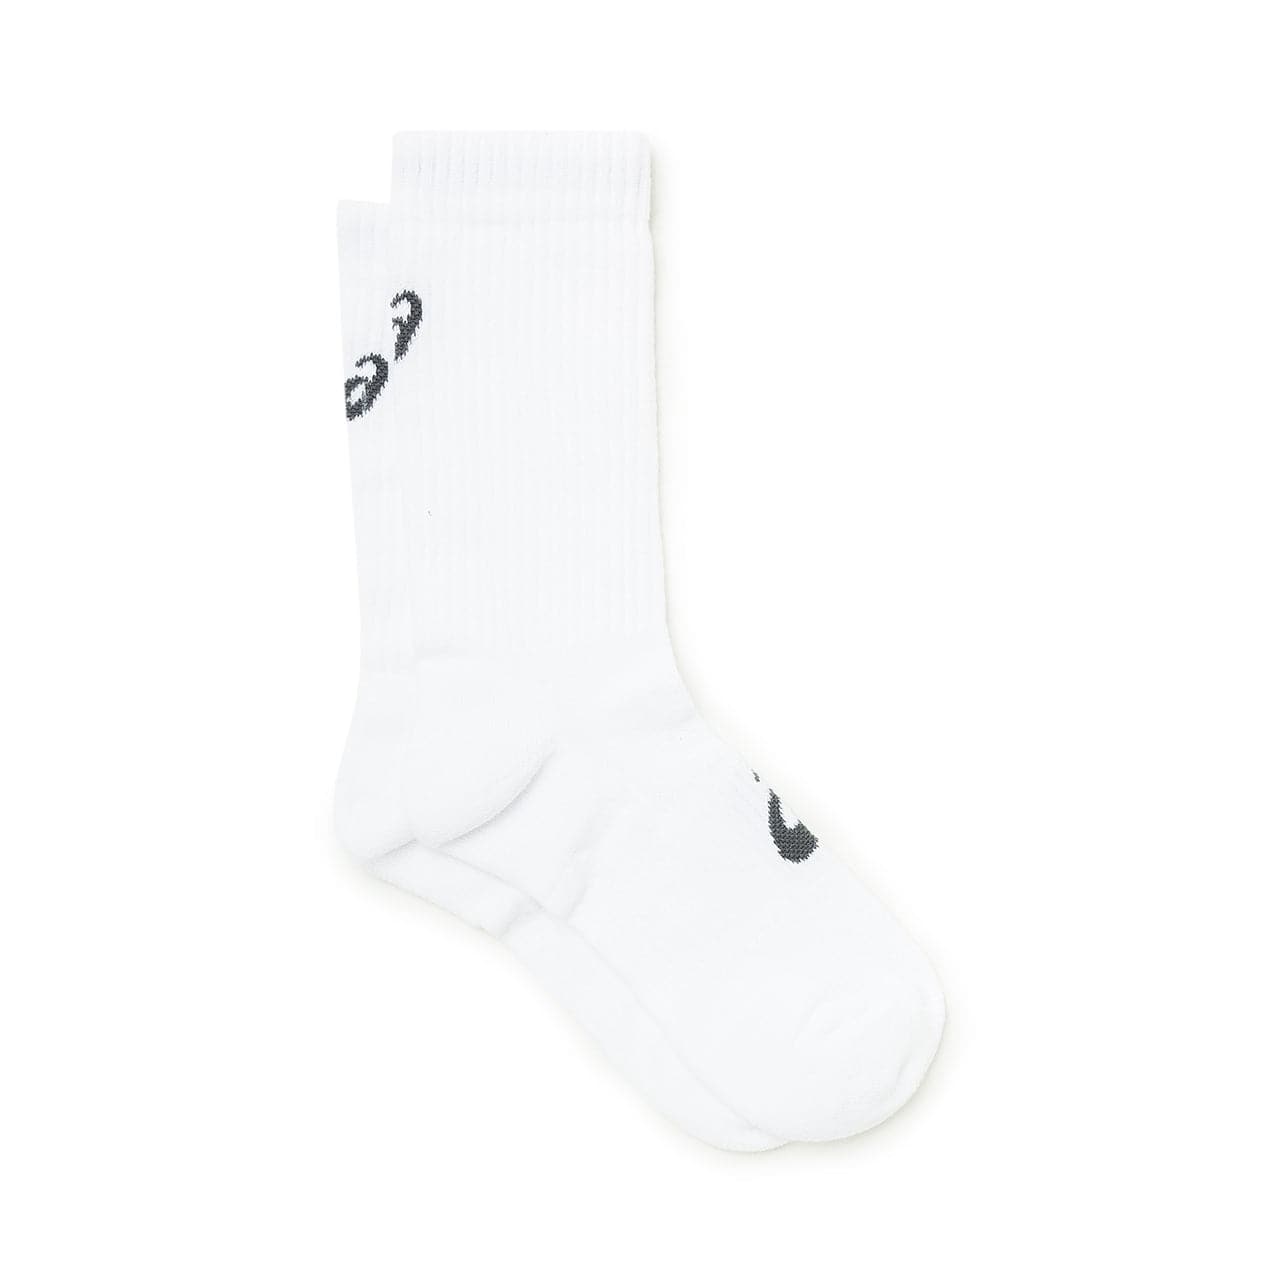 Asics Sportstyle 155204-0001 (White) 3PPK Allike Socks Crew Store –